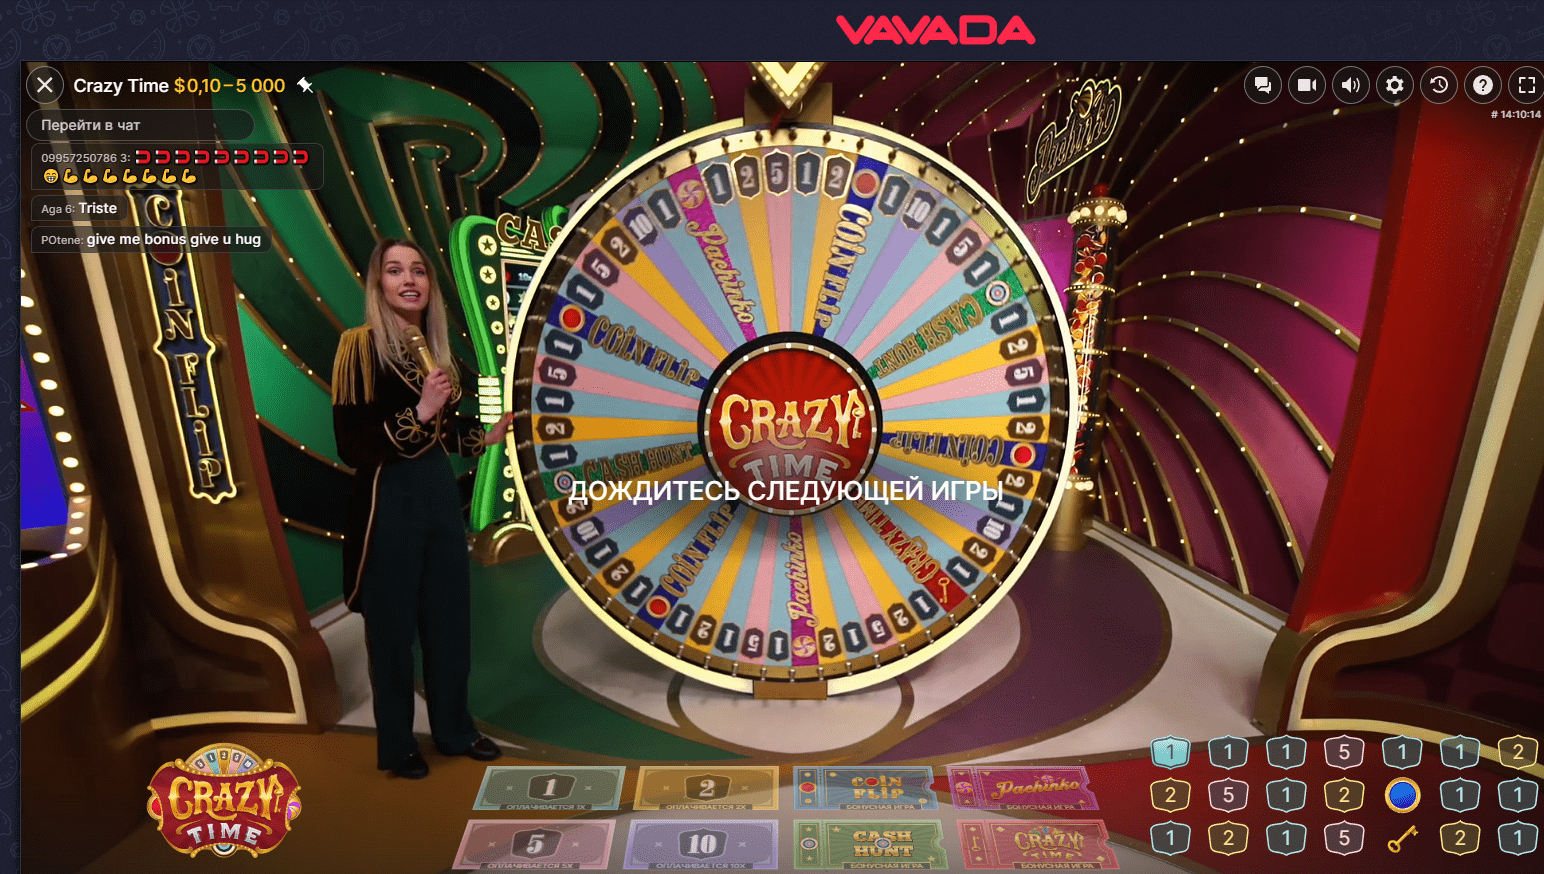 das Crazy Timespiel im Vavada Casino